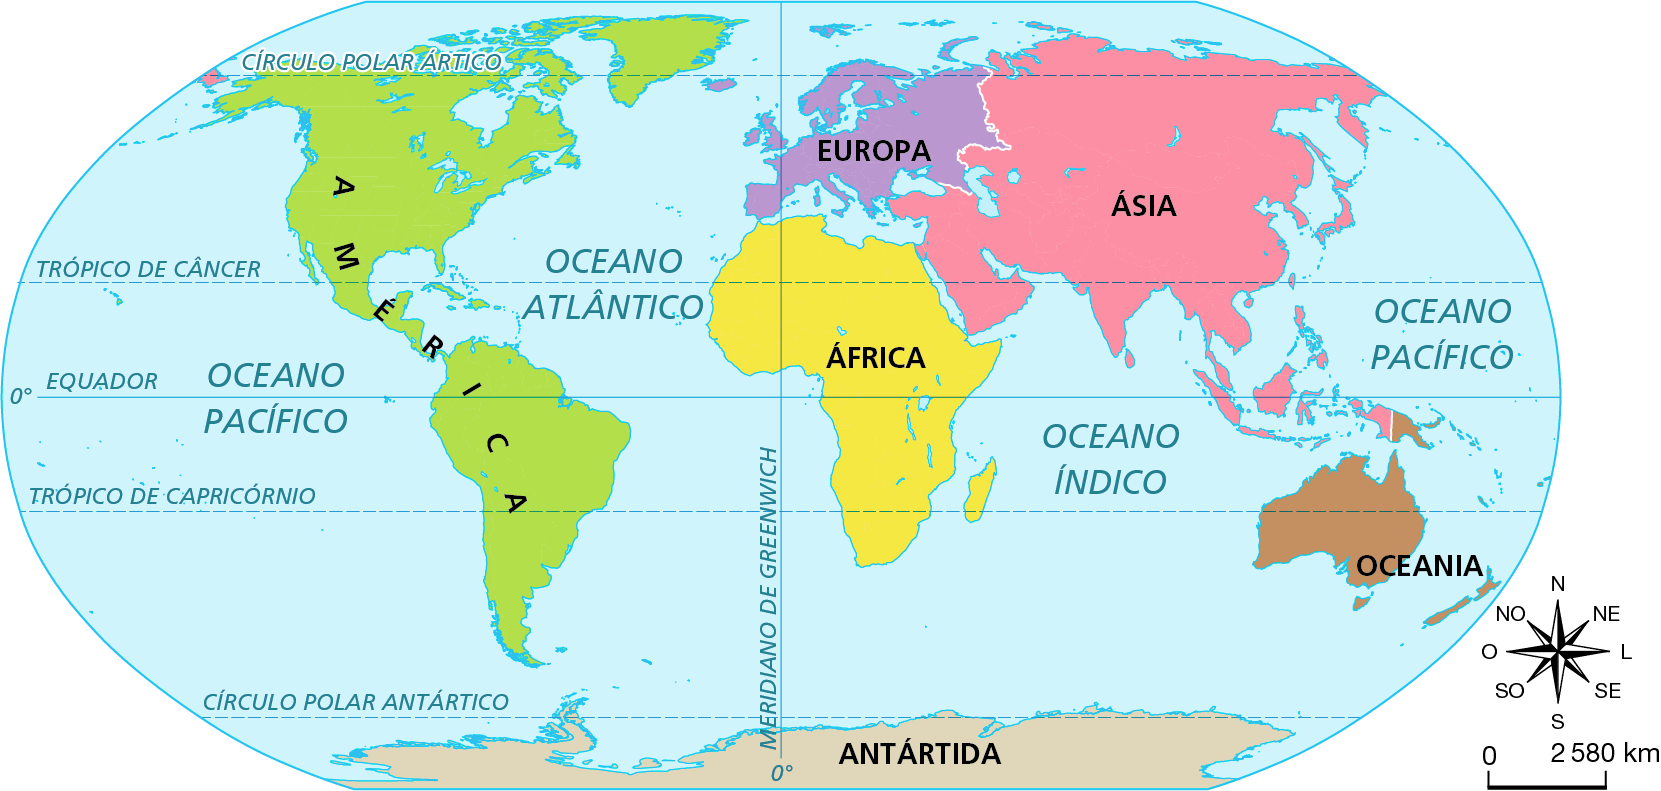 Mapa. Mundo: os continentes e sua distribuição nos hemisférios.  Planisfério representando os continentes, os principais paralelos e o meridiano de Greenwich.  O meridiano de Greenwich é representado por linha vertical, dividindo o planisfério em porção leste e porção oeste. O meridiano atravessa parte da África, representada em amarelo, e parte da Europa, representada em lilás. À leste do meridiano de Greenwich estão a Oceania, representada em marrom, a Ásia, em rosa e parte da Europa e da África.  Na porção a oeste do meridiano de Greenwich, está parte da Europa e da África e a América, representada em verde.  O planisfério é dividido em dois por linha horizontal, o Equador. O Equador atravessa a América, a África e a Ásia. Ao norte do Equador, há porção norte da América, porção norte da África, Europa e grande parte da Ásia. Ao sul do Equador, há parte da América e da África, ilhas da Ásia, Oceania e Antártida. No canto inferior direito, rosa dos ventos e escala de 0 a 2.580 quilômetros.